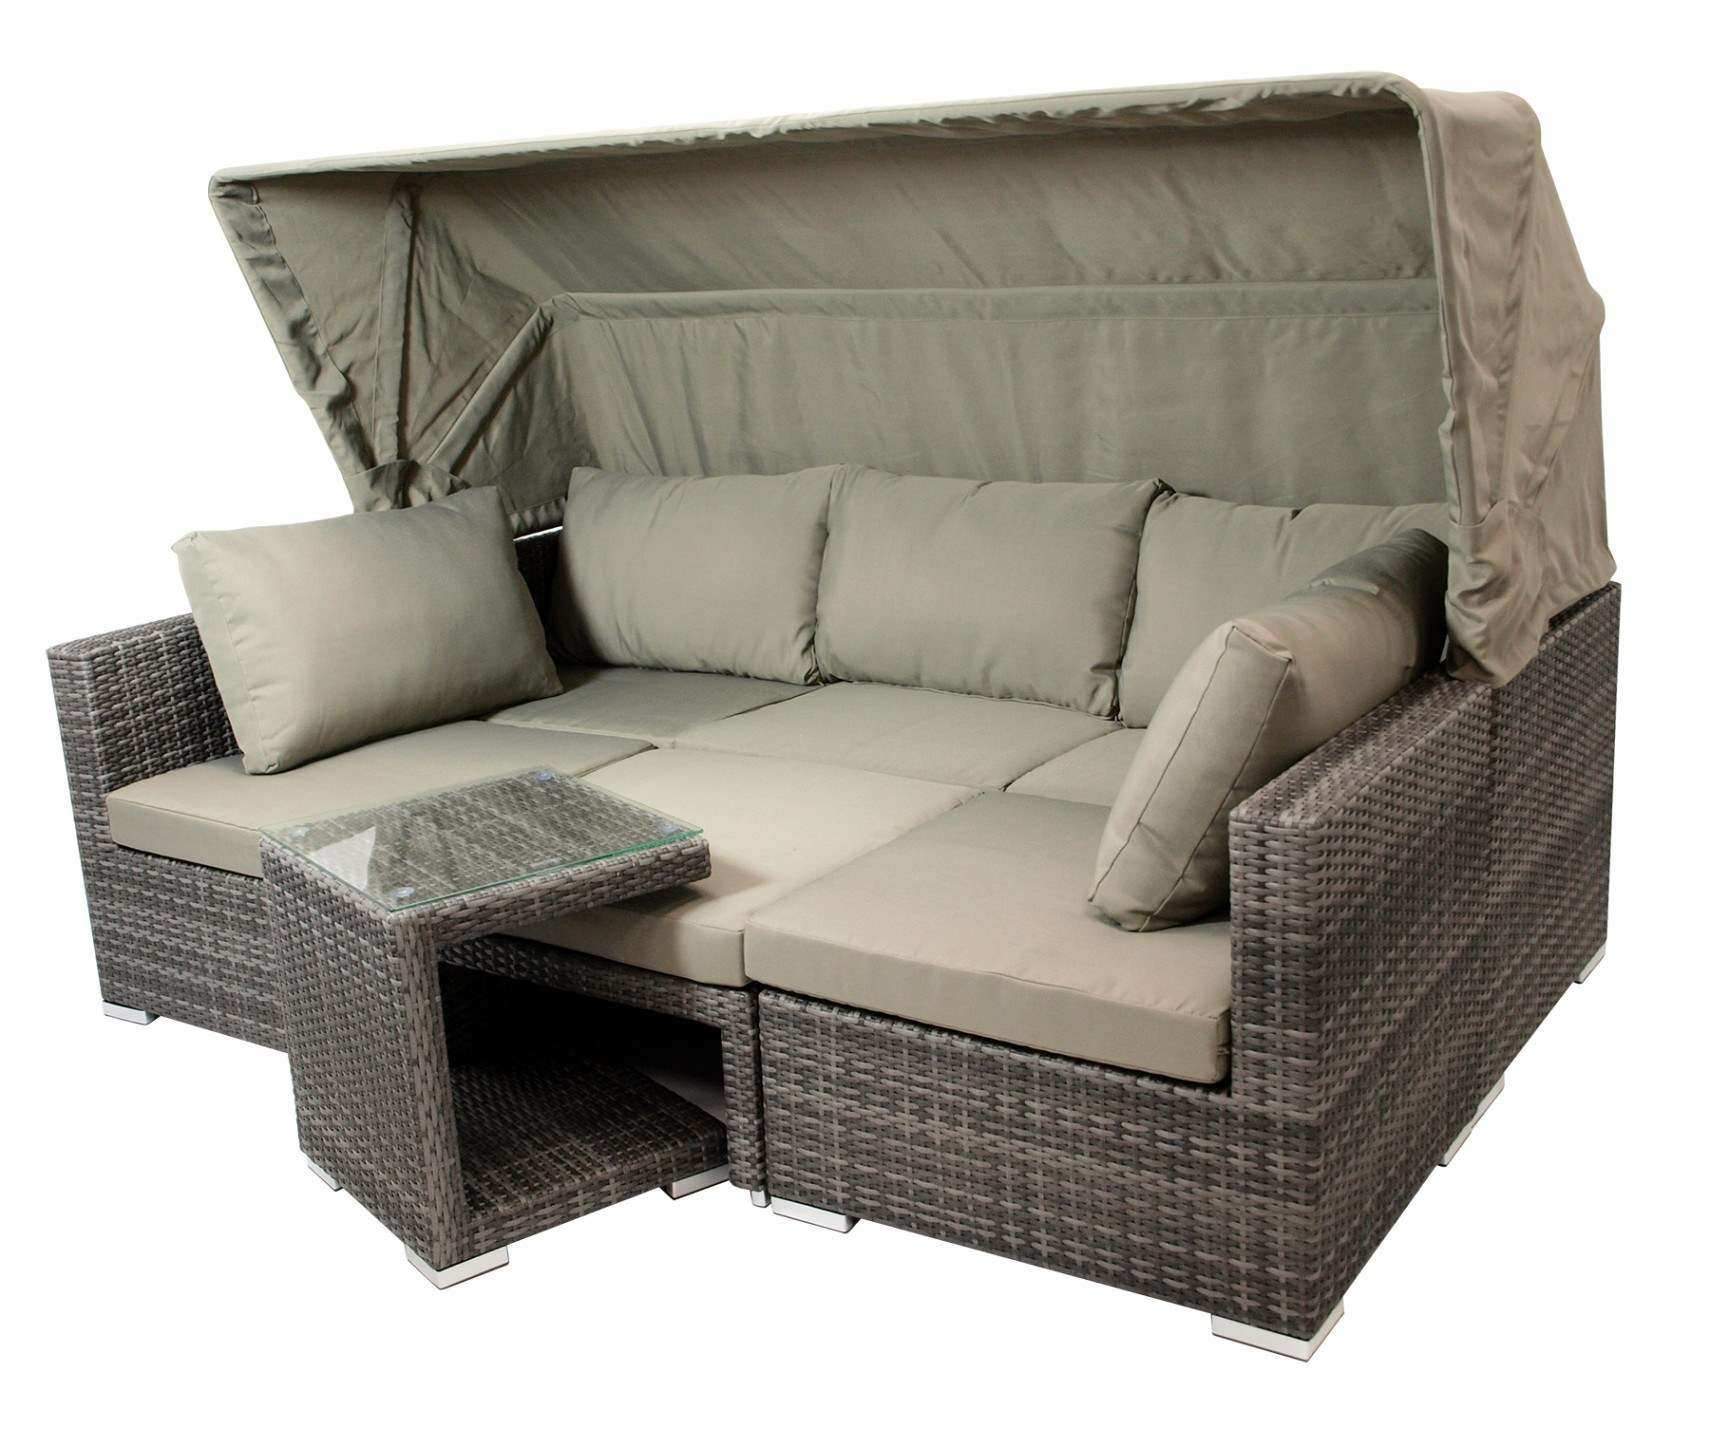 anordnung sofa wohnzimmer elegant 2 sitzer sofa zum ausziehen luxus schlafcouch rosa 0d fotos of anordnung sofa wohnzimmer